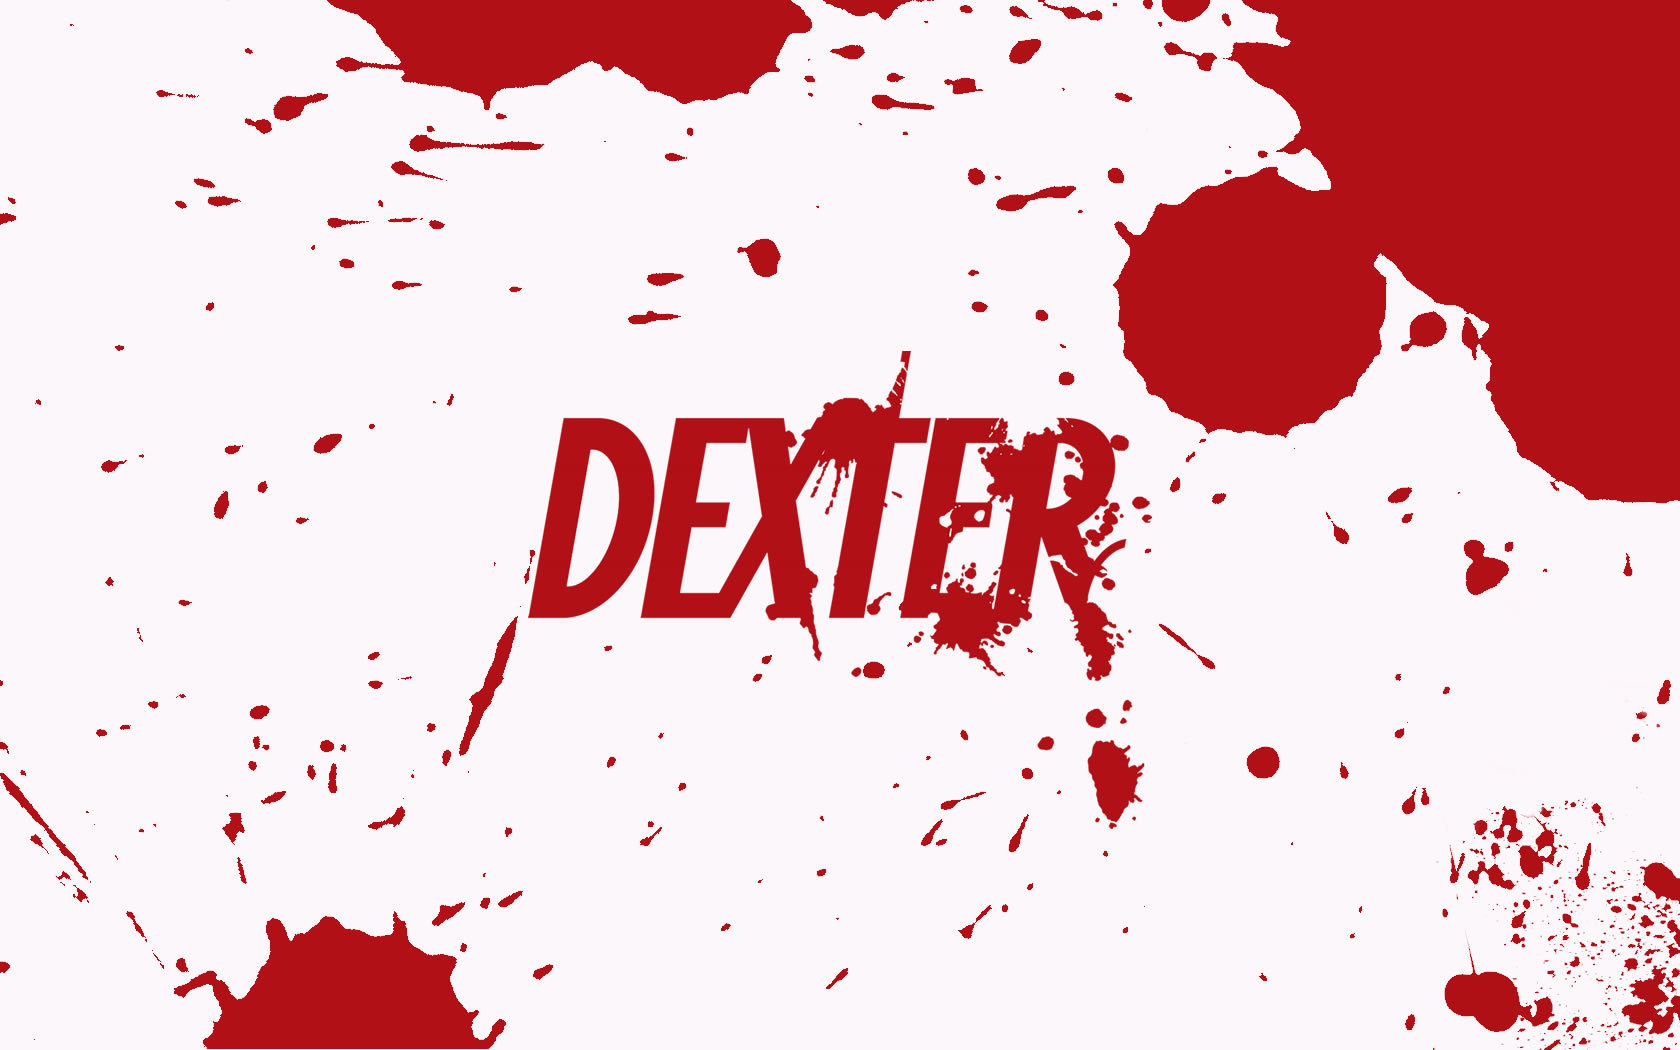 Dexter cellphone Wallpaper